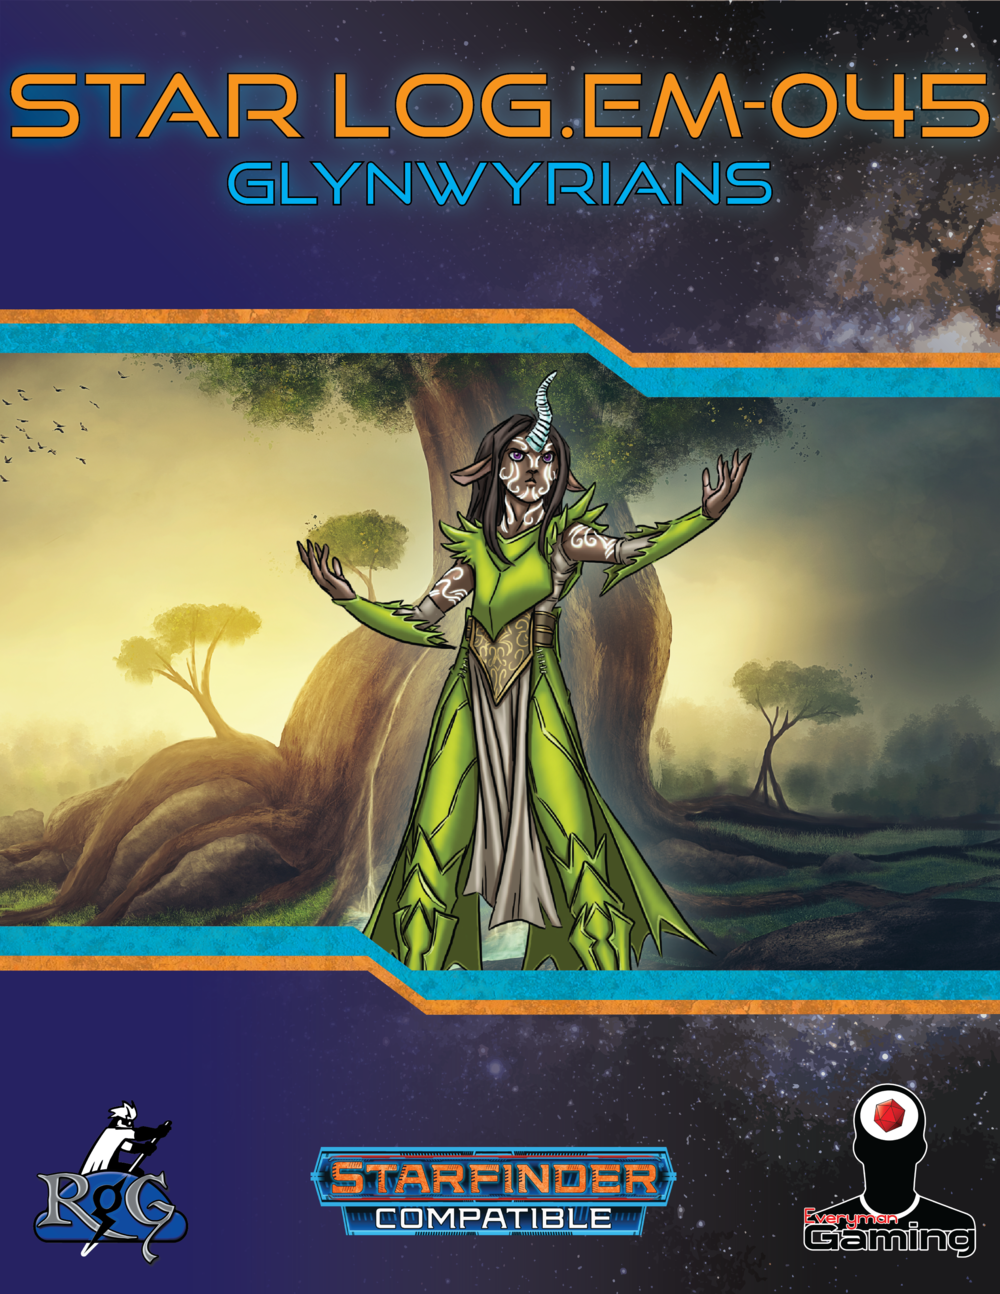 Star Log.EM-045: Glynwyrians